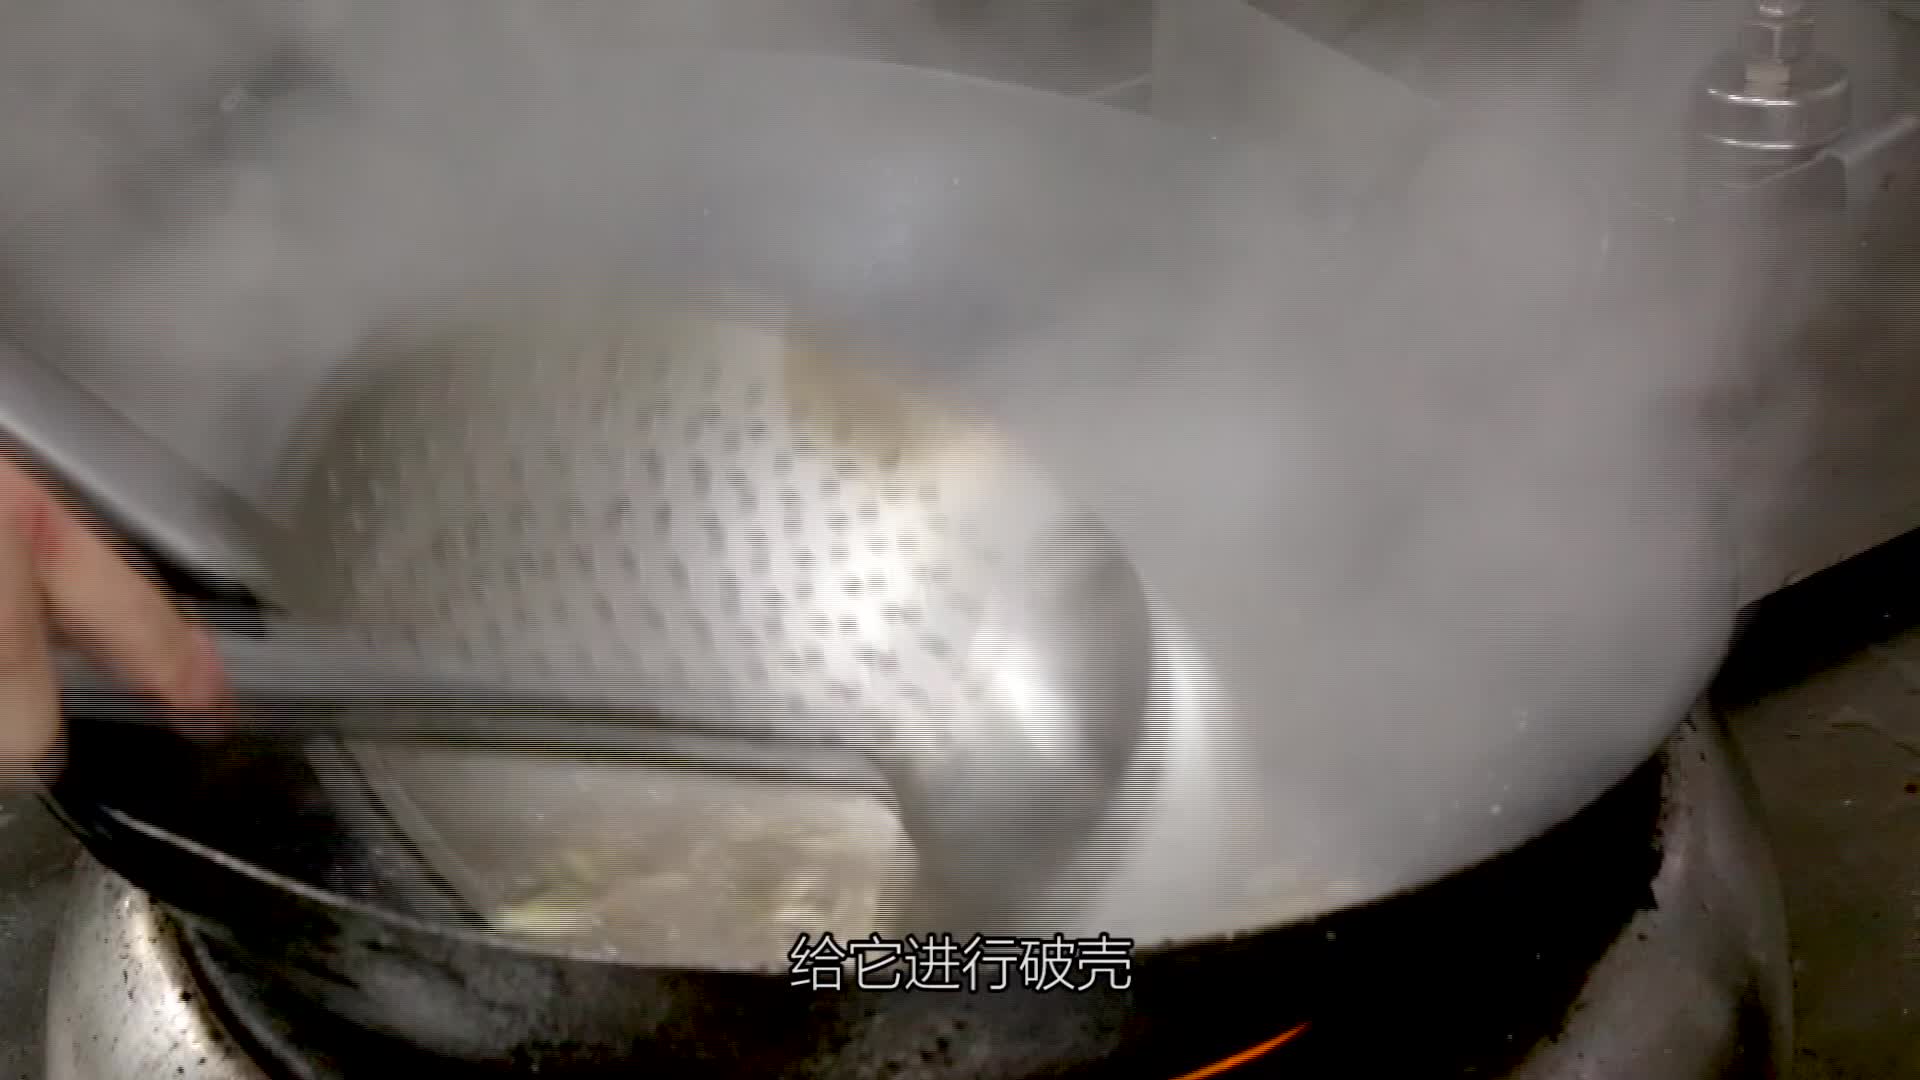 新鲜雪蛤配上秘制酱料 肥美鲜活 实在过瘾